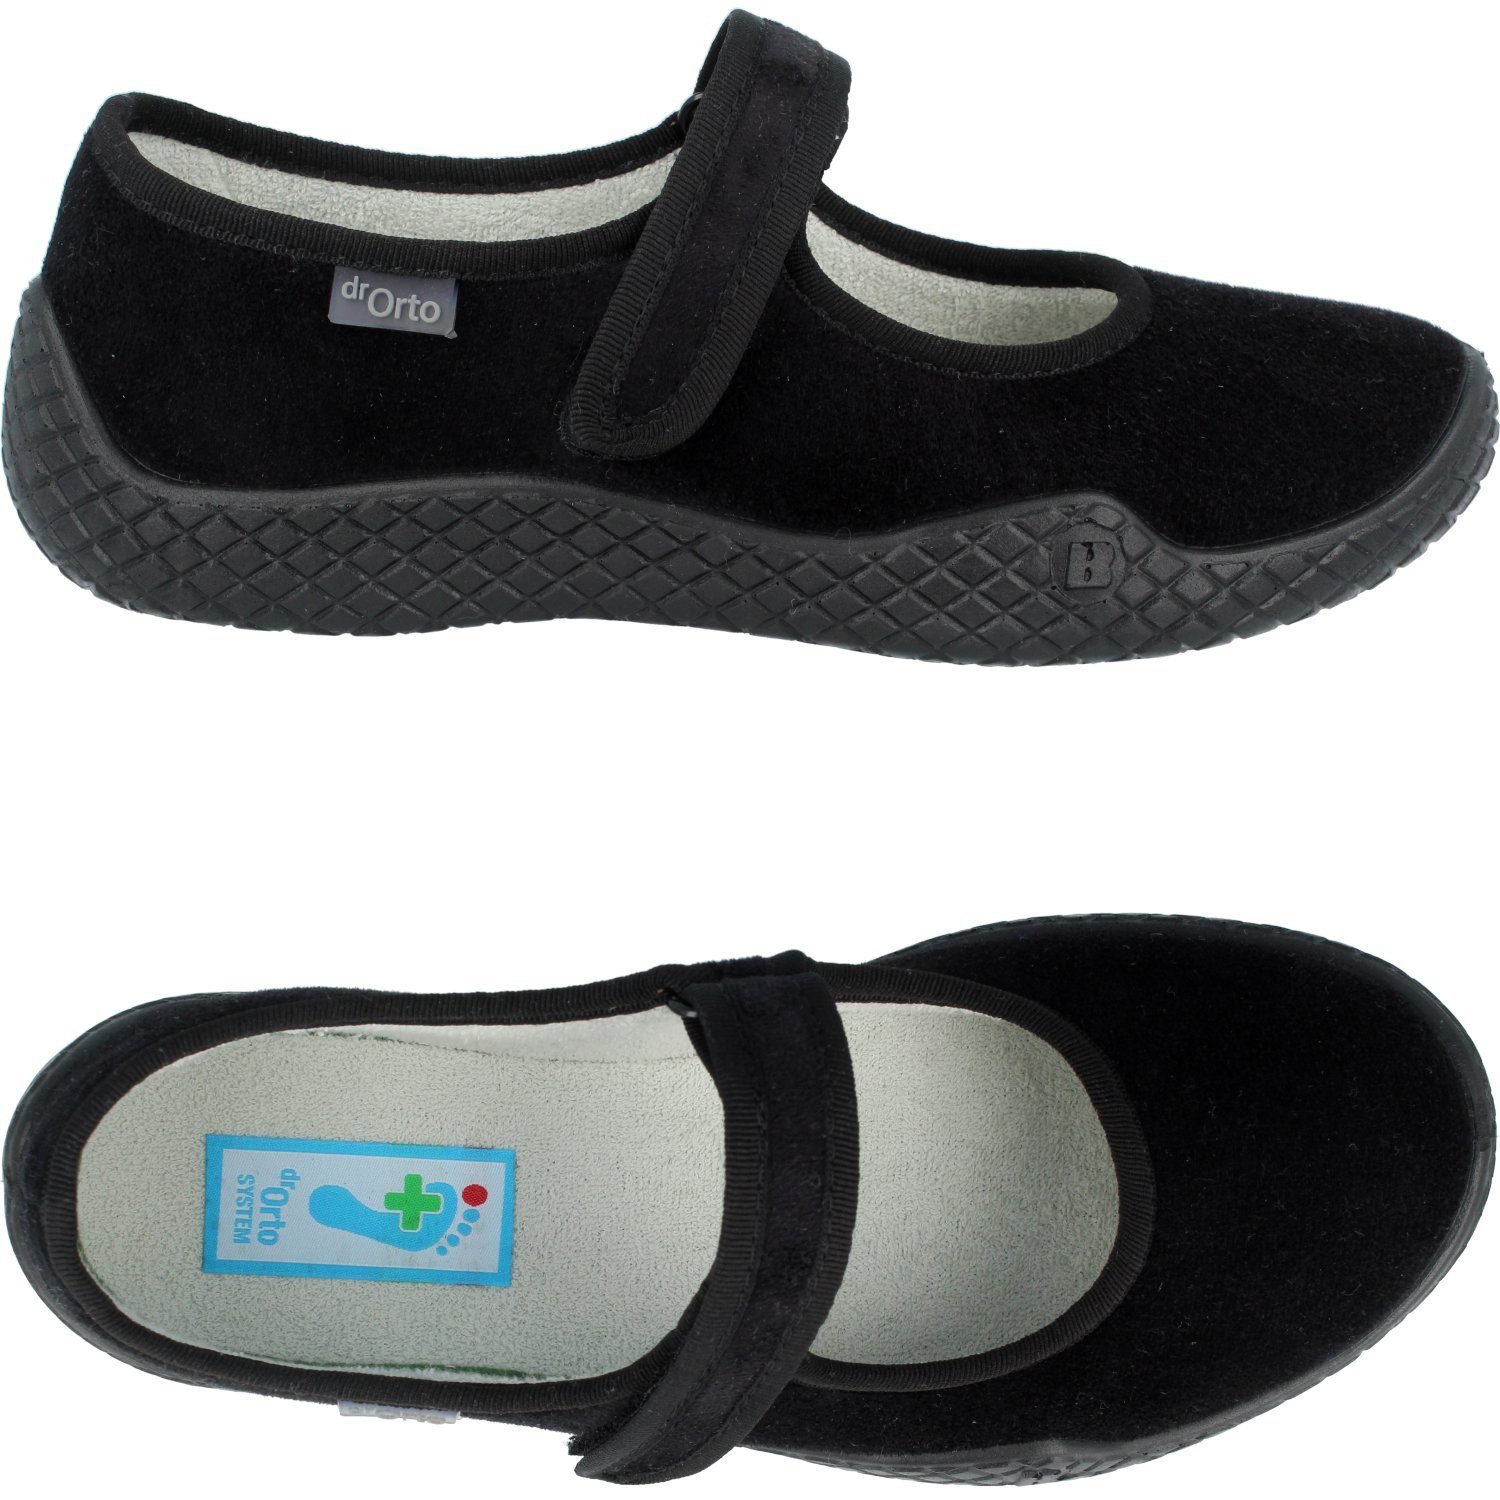 Dr. Orto »Bequeme Sommer-Schuhe für Damen« Slip-On Sneaker  Gesundheitsschuhe, Präventivschuhe, Sommer-Slipper online kaufen | OTTO